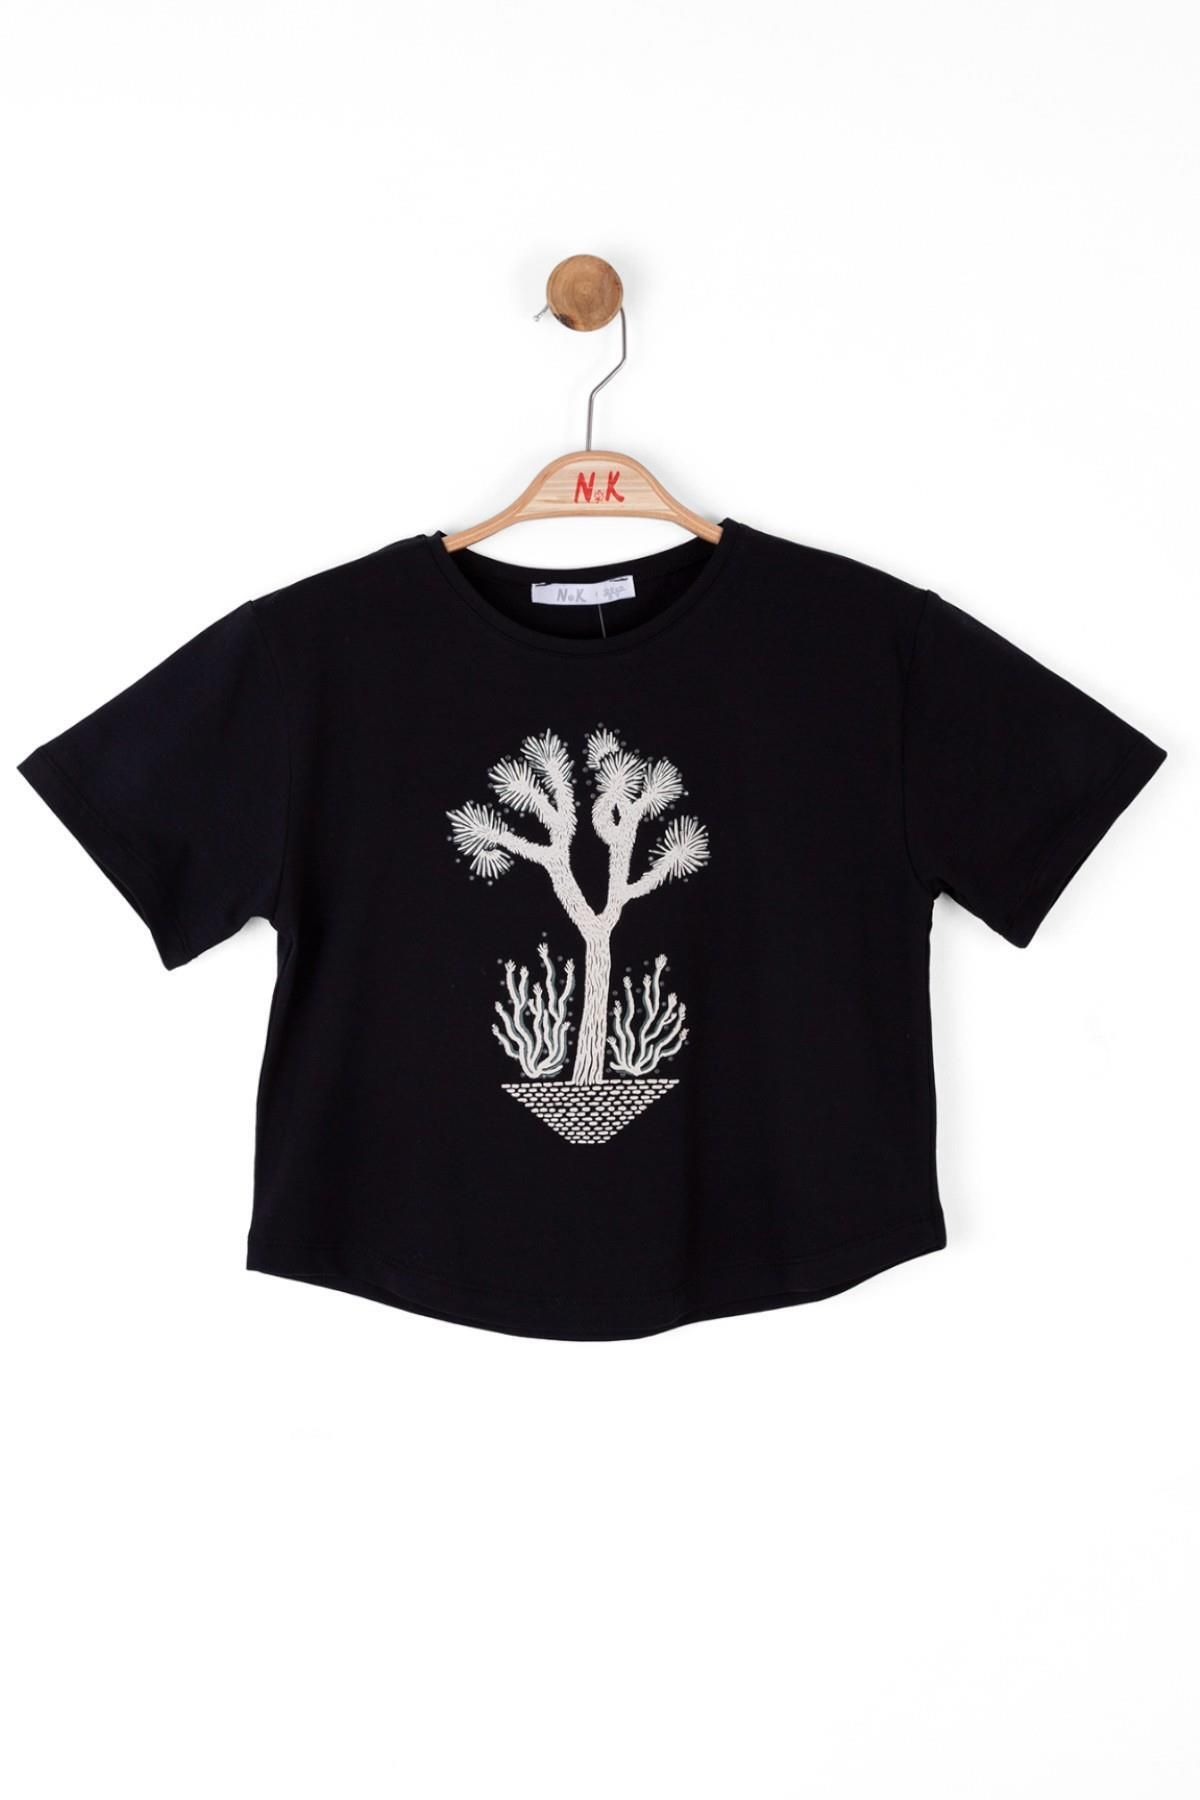 Nk Kids Kız Çocuk Baskılı Kısa Kol T-shirt 36402 Siyah